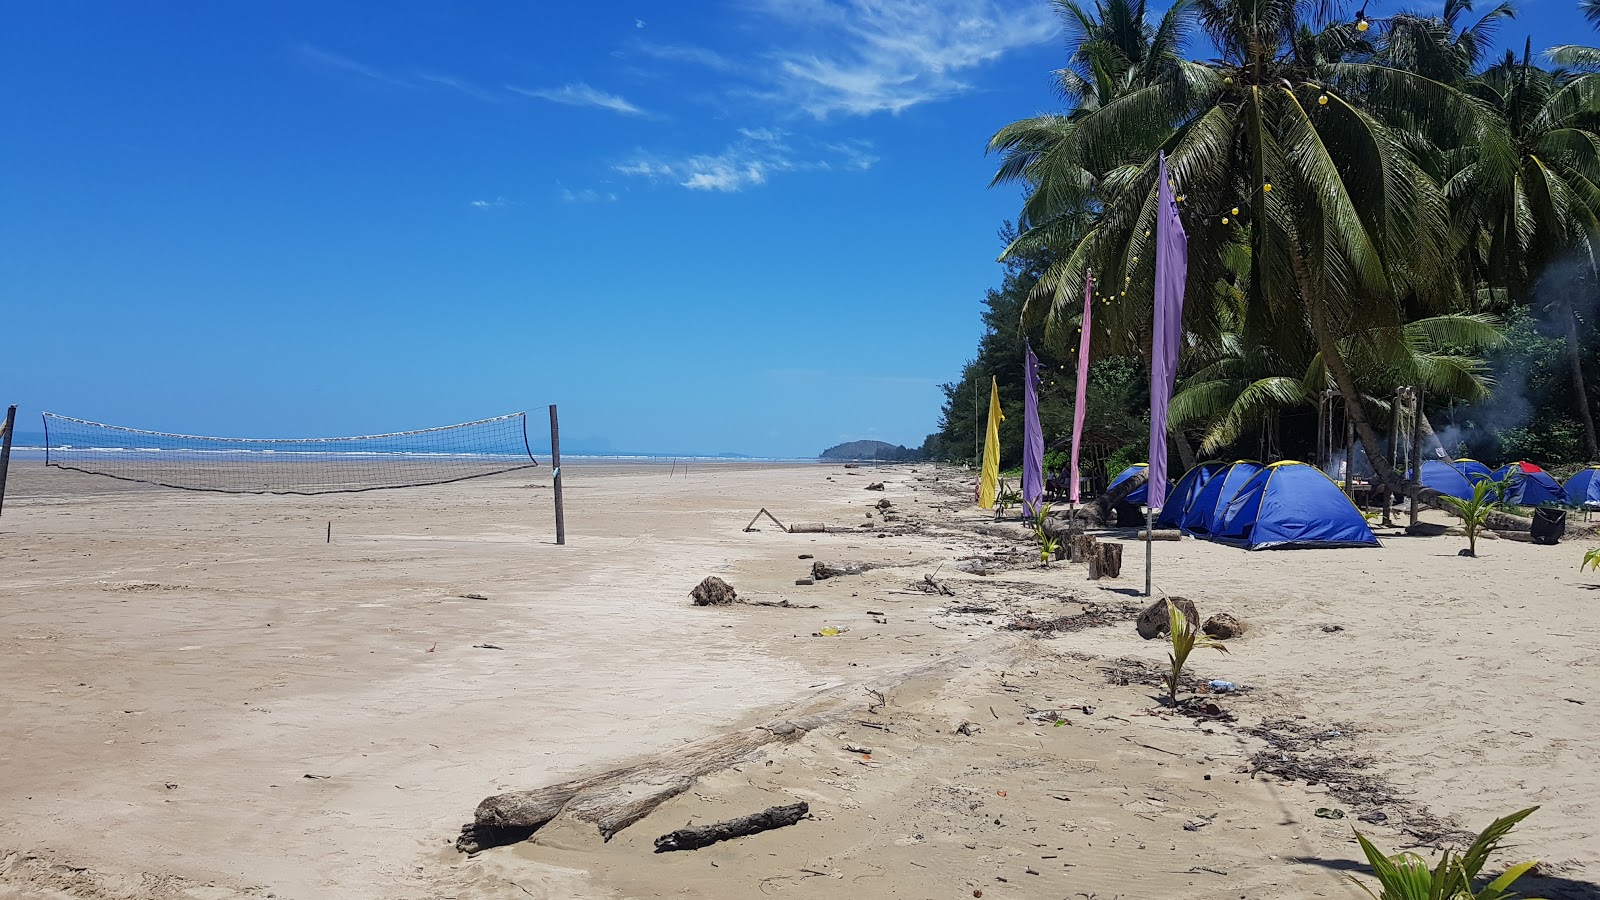 Foto di Pugu Lundu Beach ubicato in zona naturale